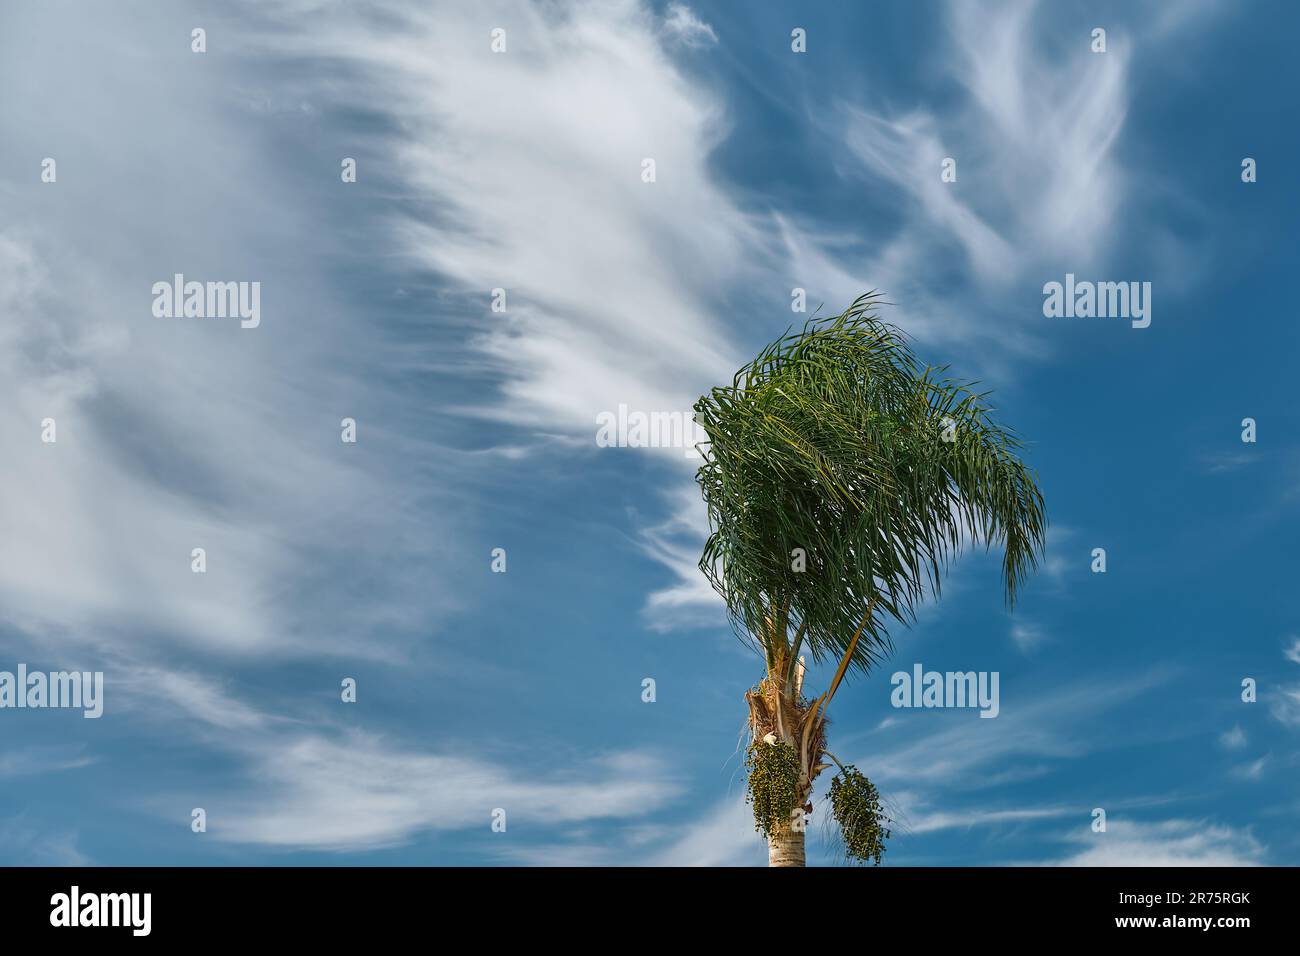 Palme biegt sich im Wind zu Beginn eines Sturms, blauer Himmel mit Wolken, Platz für Text. Klimawandel, saisonale Stürme auf See. Stockfoto